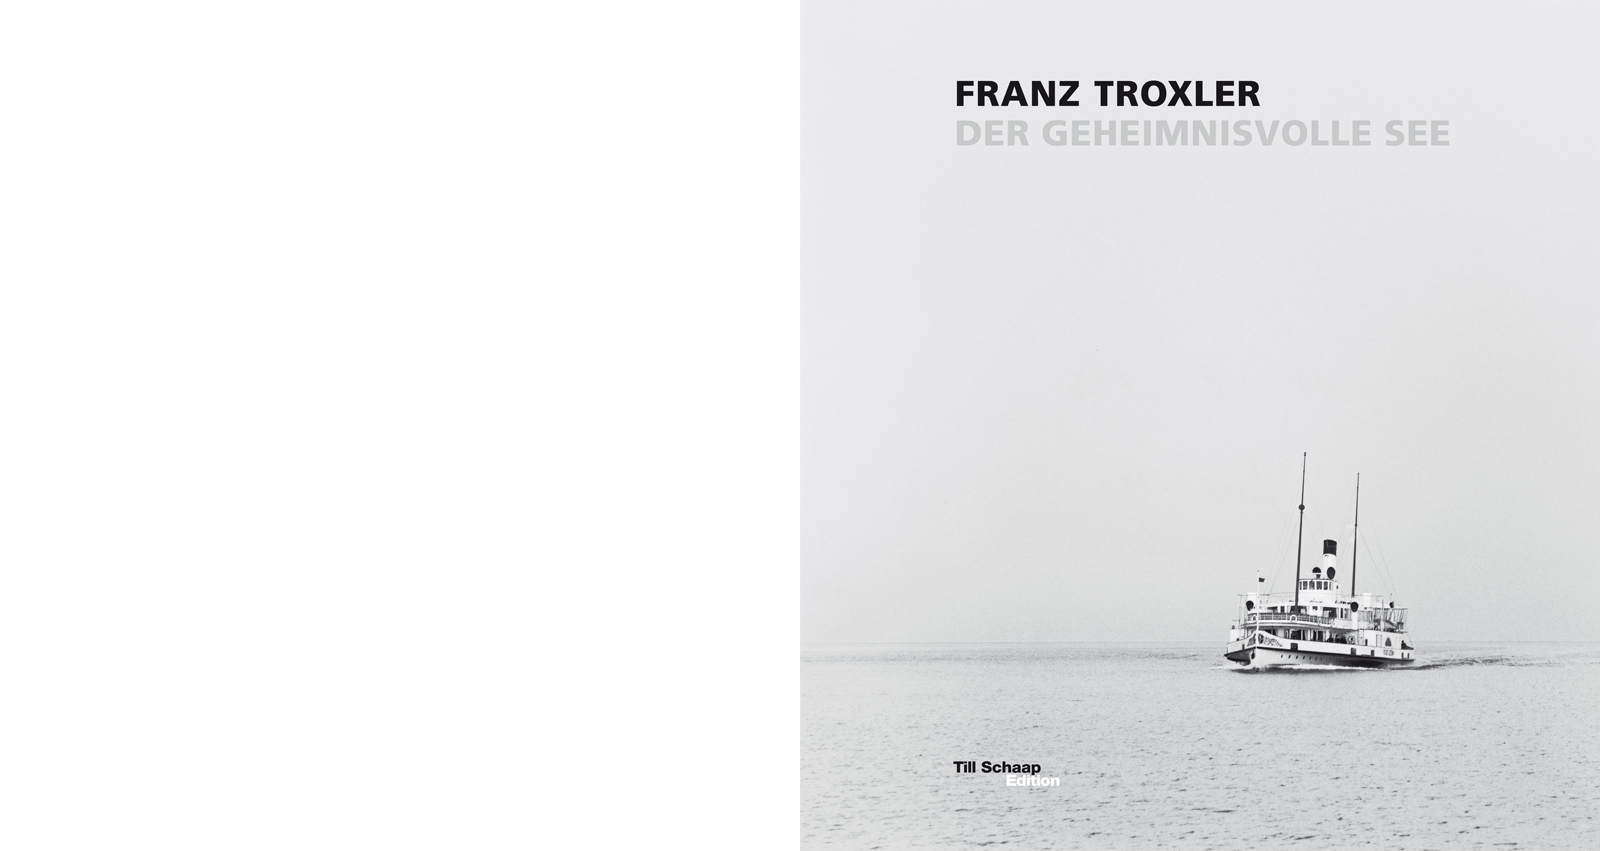 FRANZ TROXLER – DER GEHEIMNISVOLLE SEE 